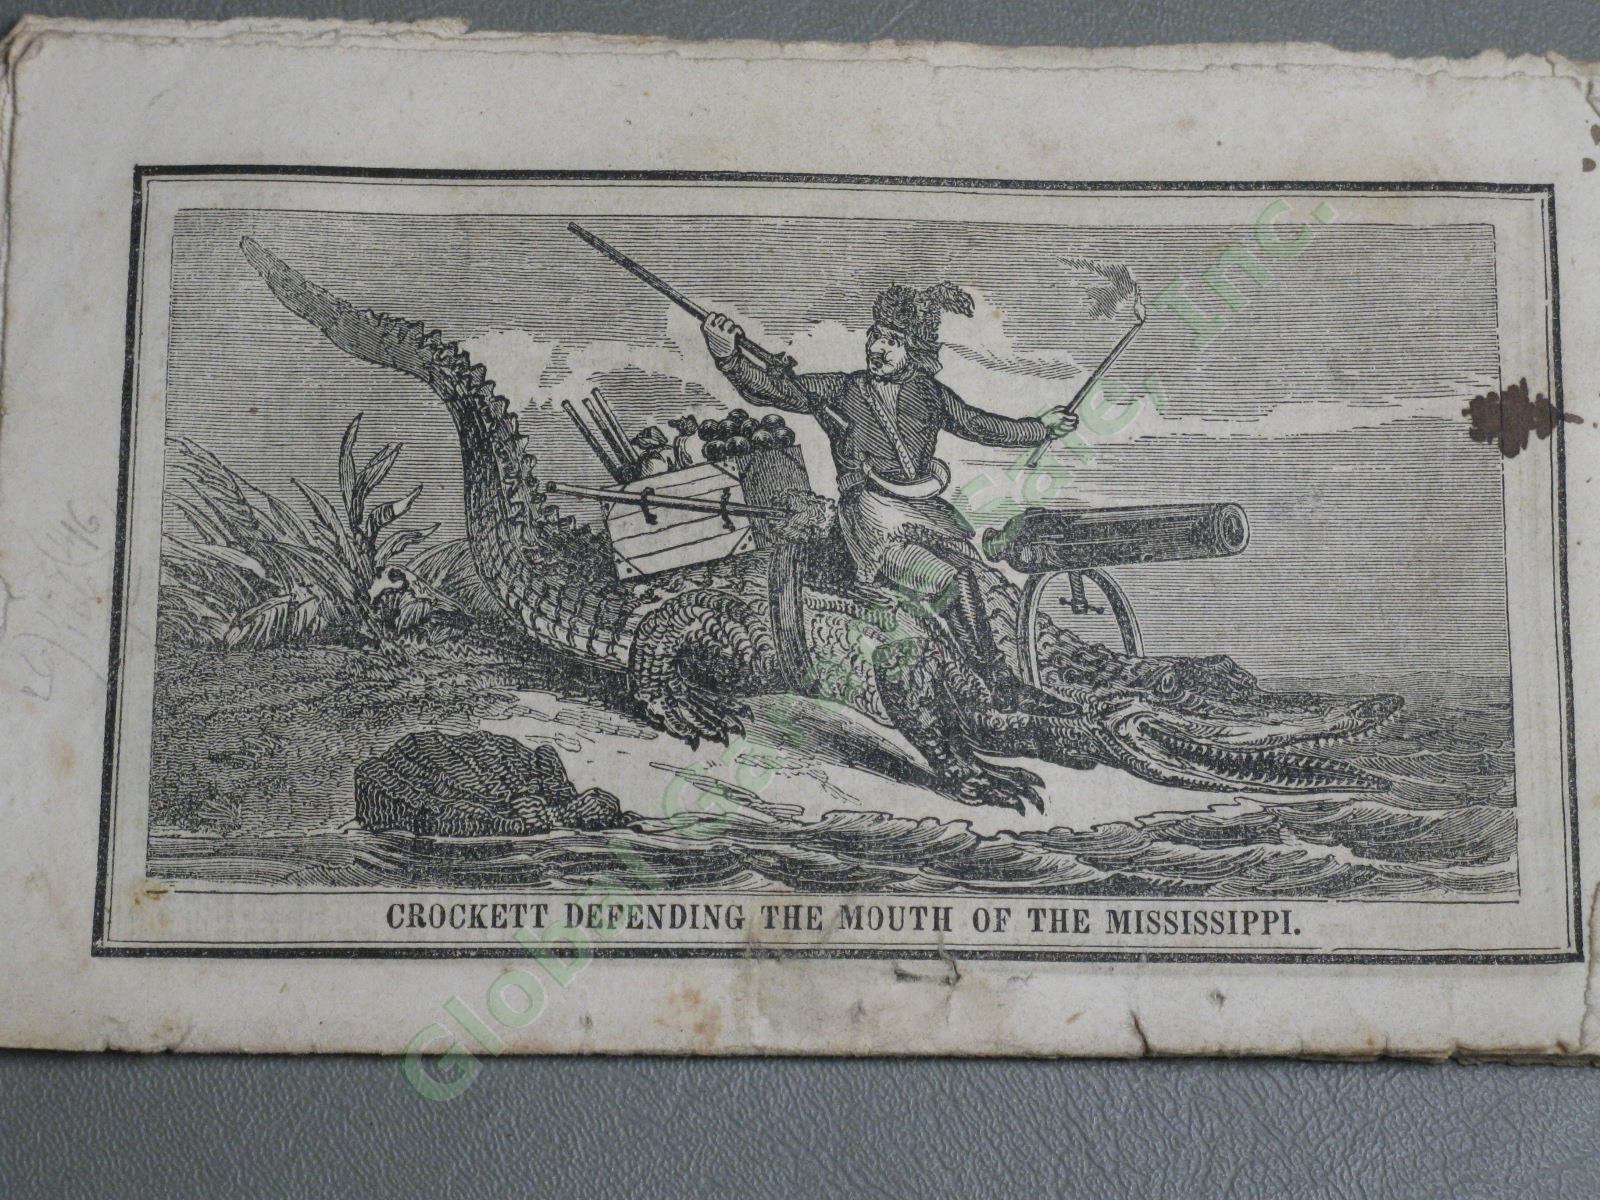 2 RARE Antique Original 1847 Davy Crockett